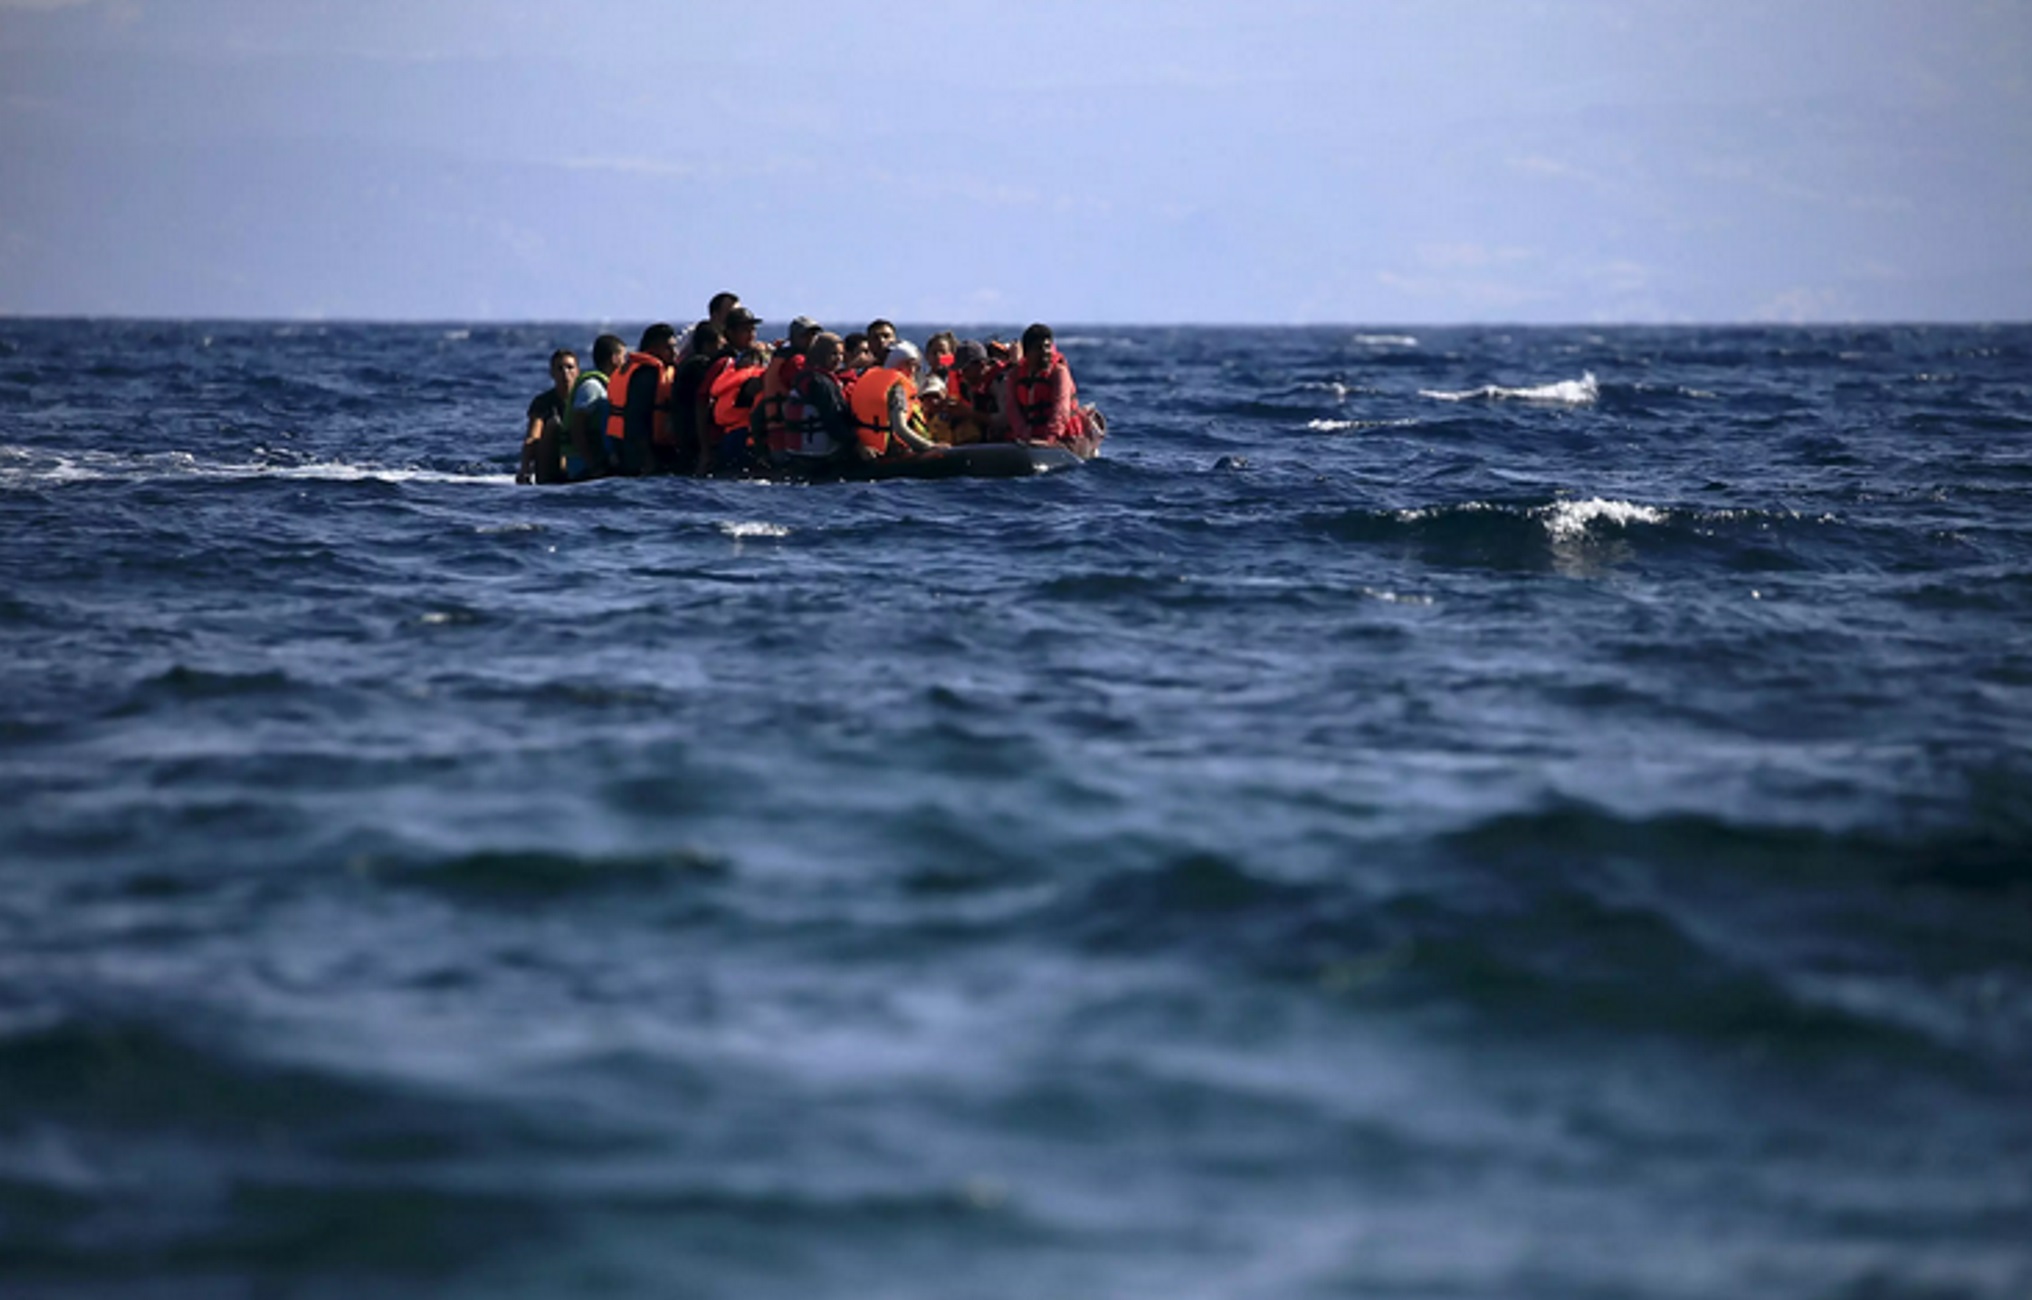 Τυνησία: 14 πτώματα μεταναστών βρέθηκαν στο νησί Τζέρμπα